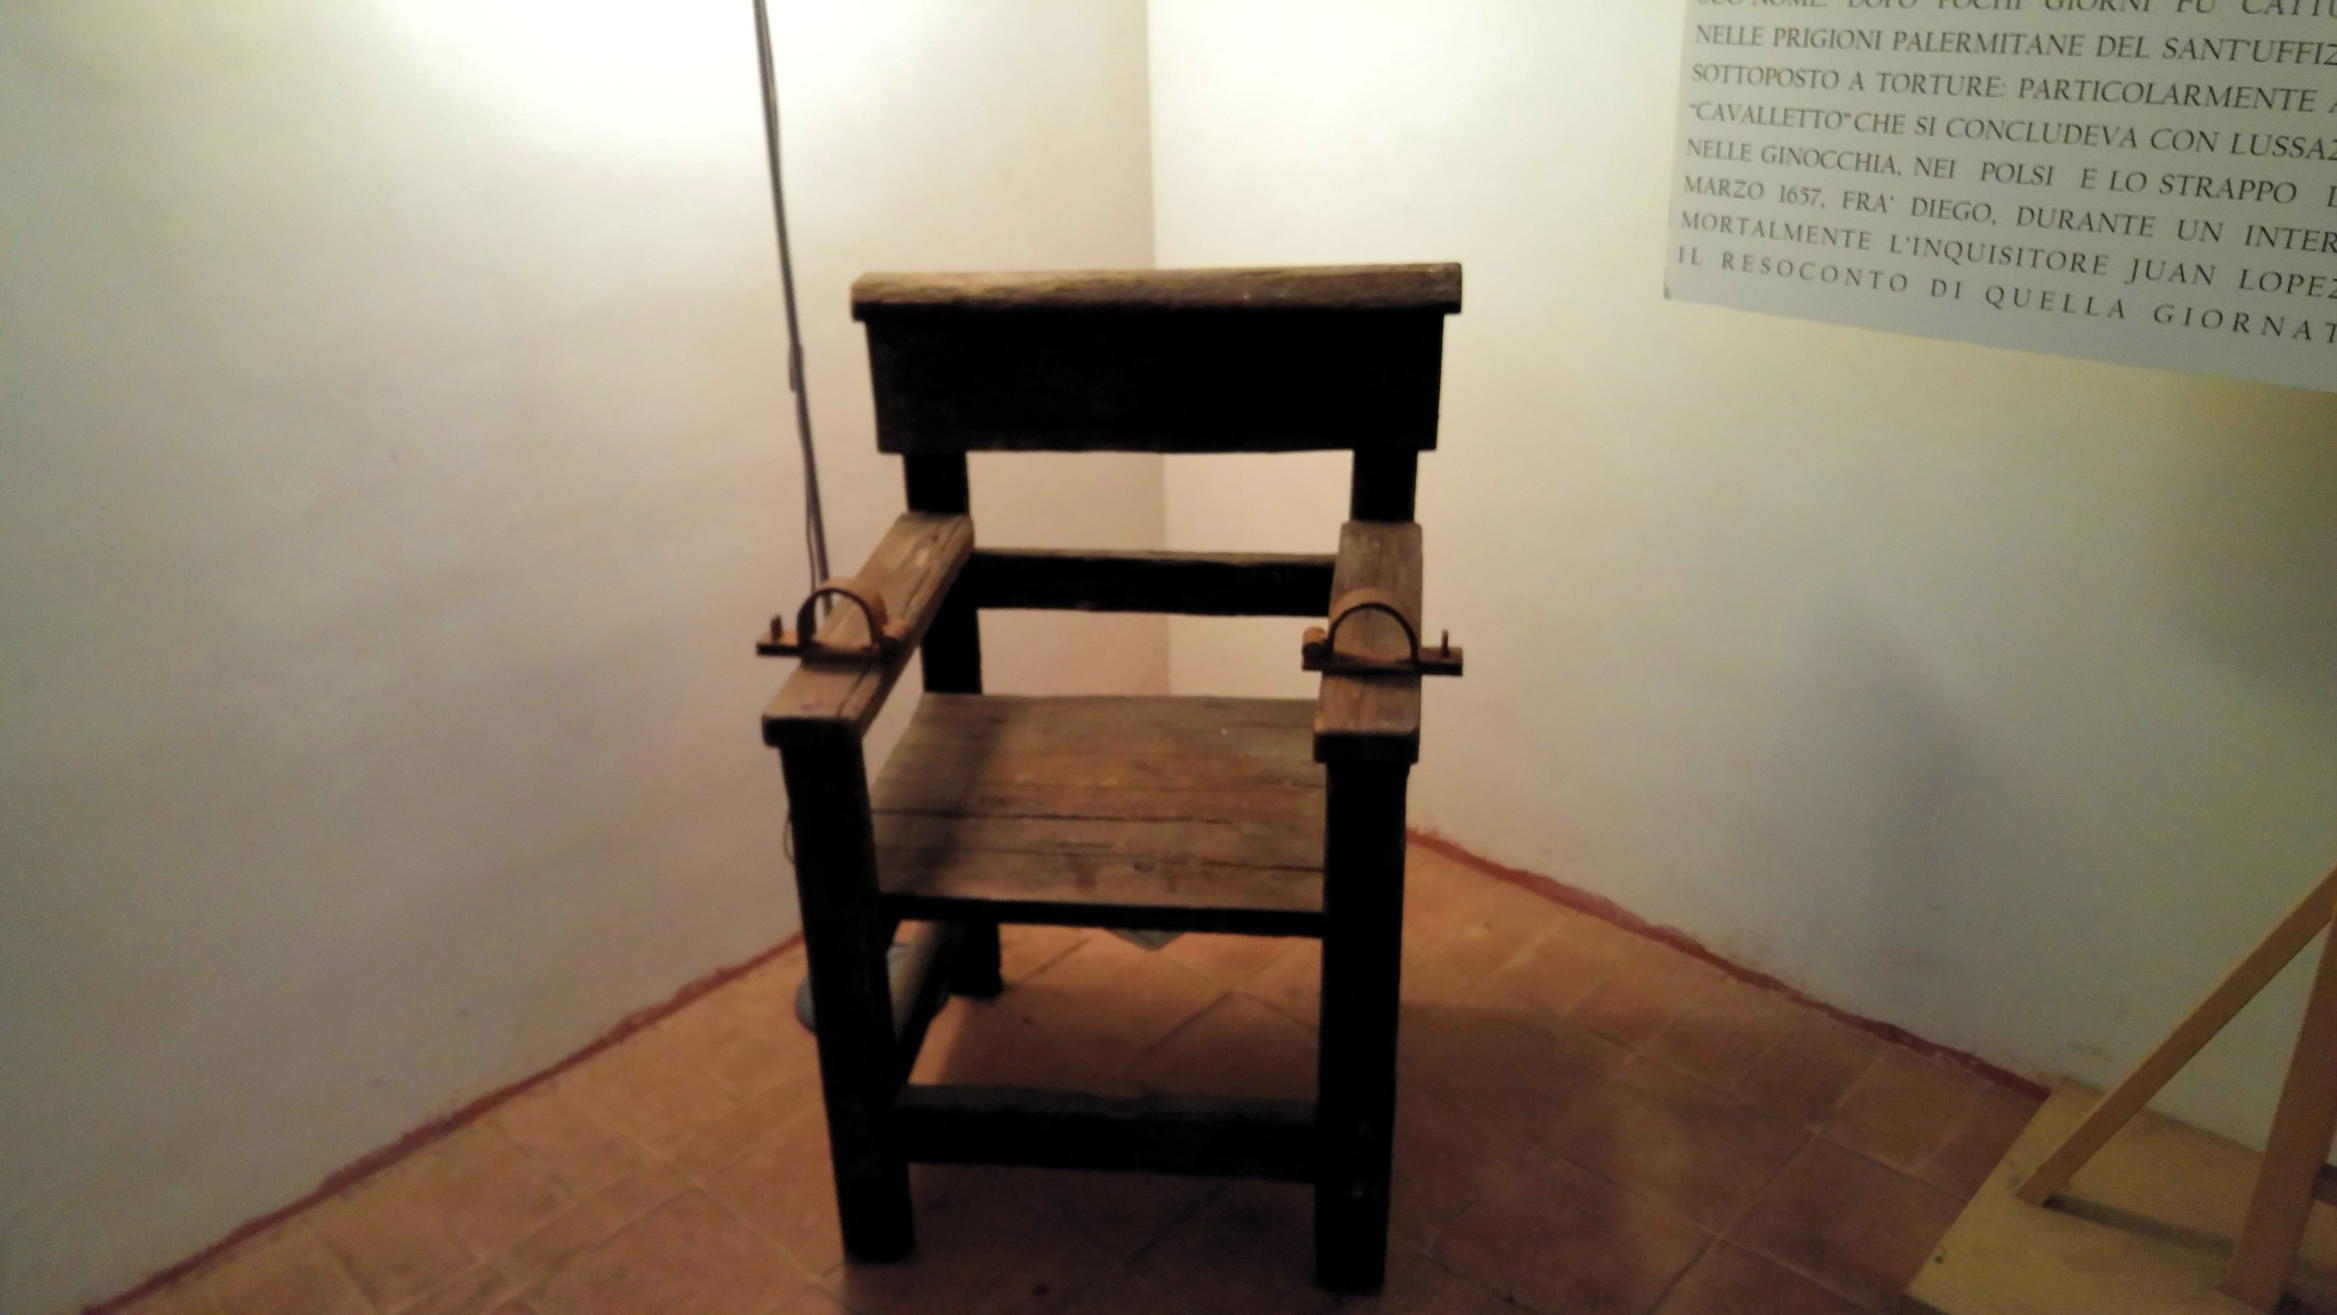 Museo de la Inquisición - silla de interrogatorio